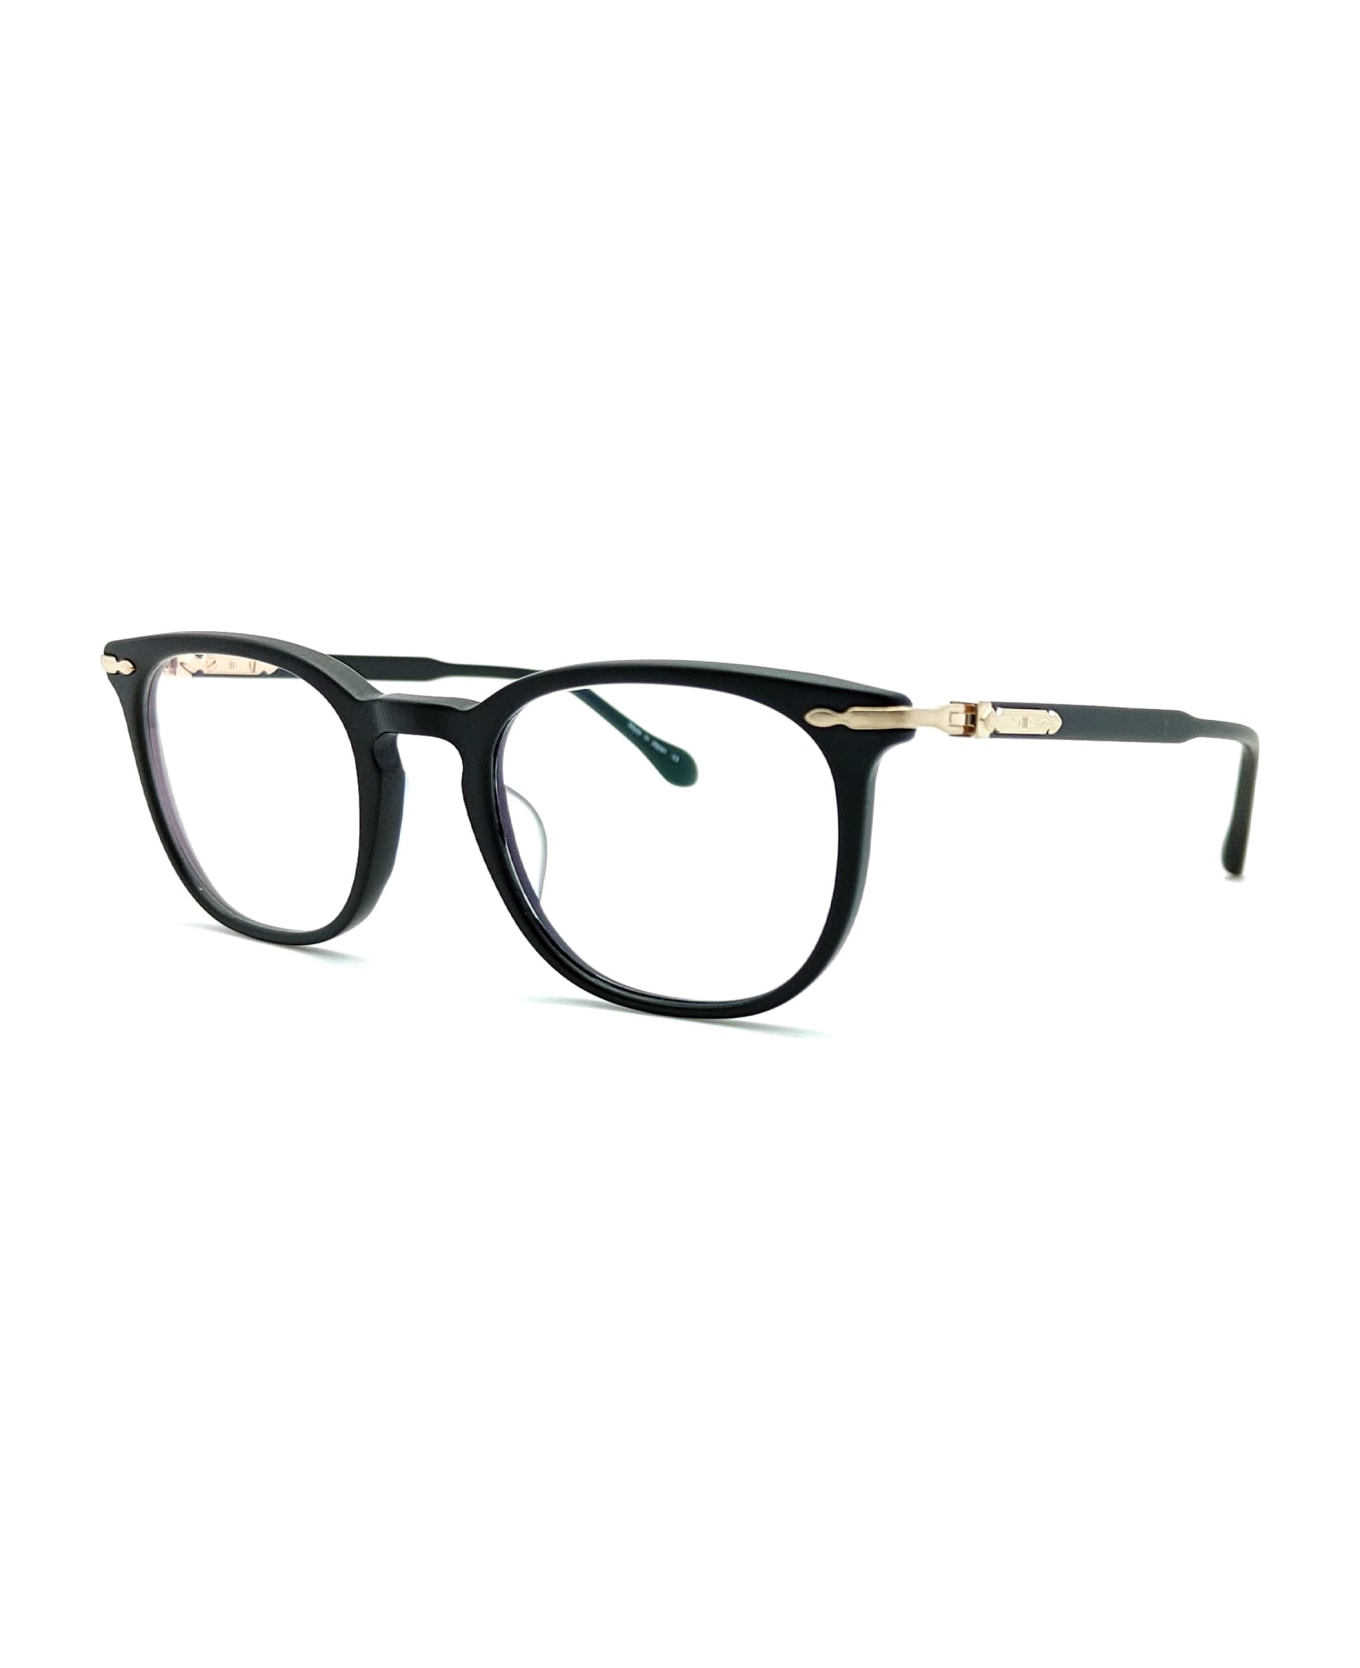 Matsuda M2047 - Matte Black / Brushed Gold Rx Glasses - Matte black